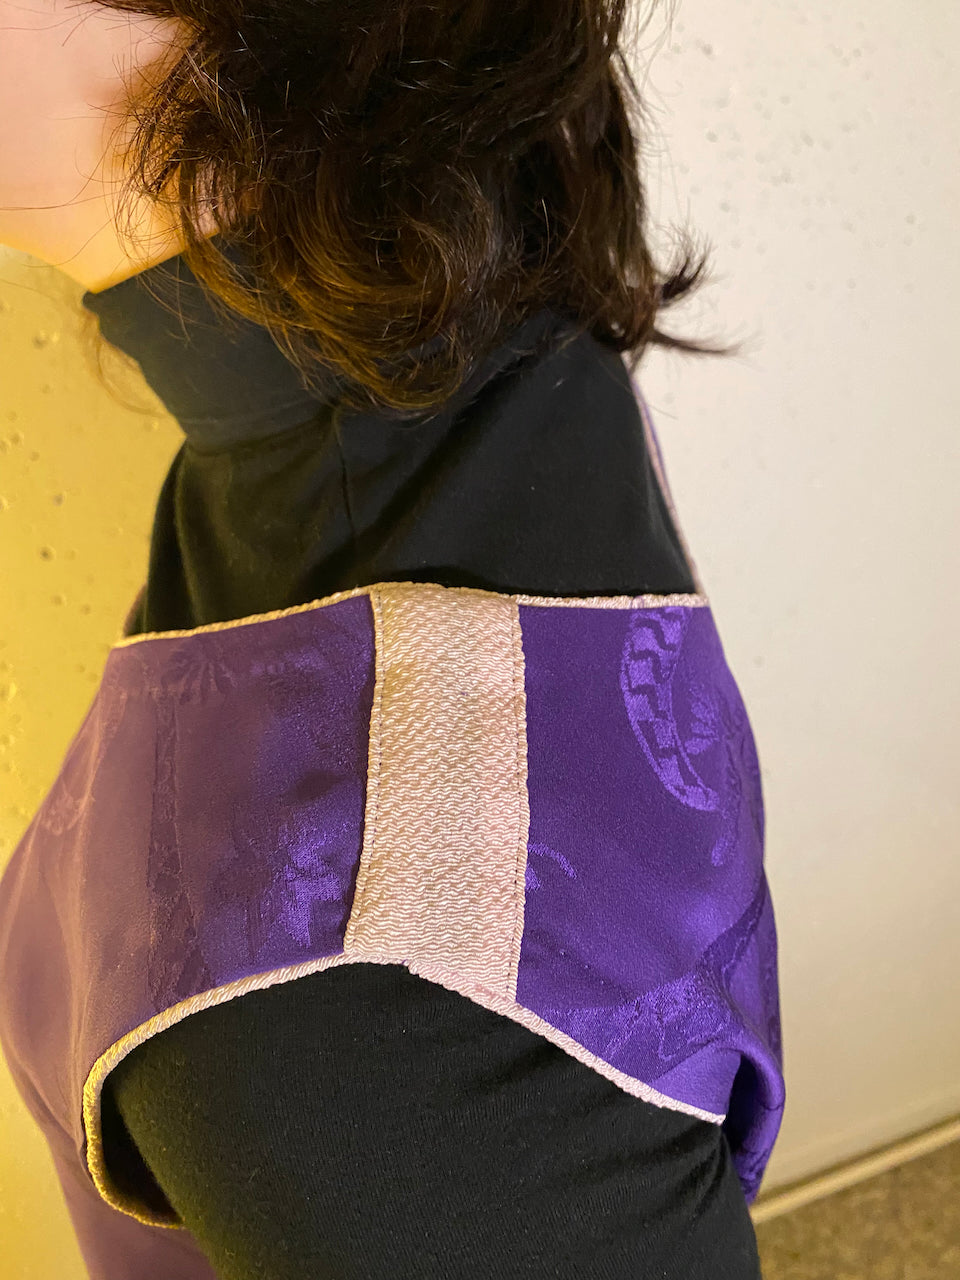 Tank tops made  from silk purple kimonos.